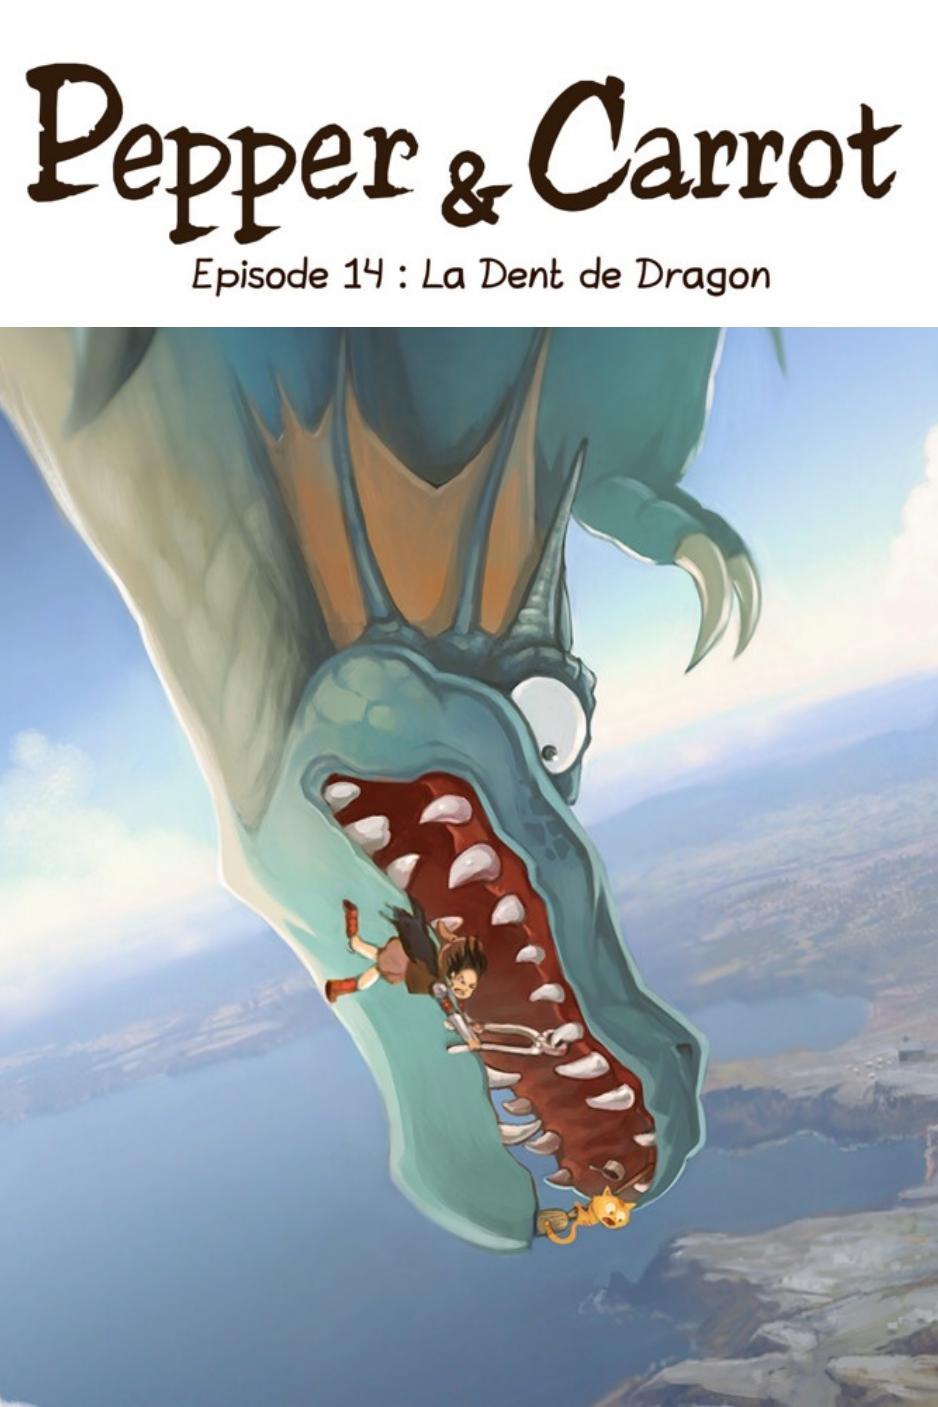 La Dent de dragon